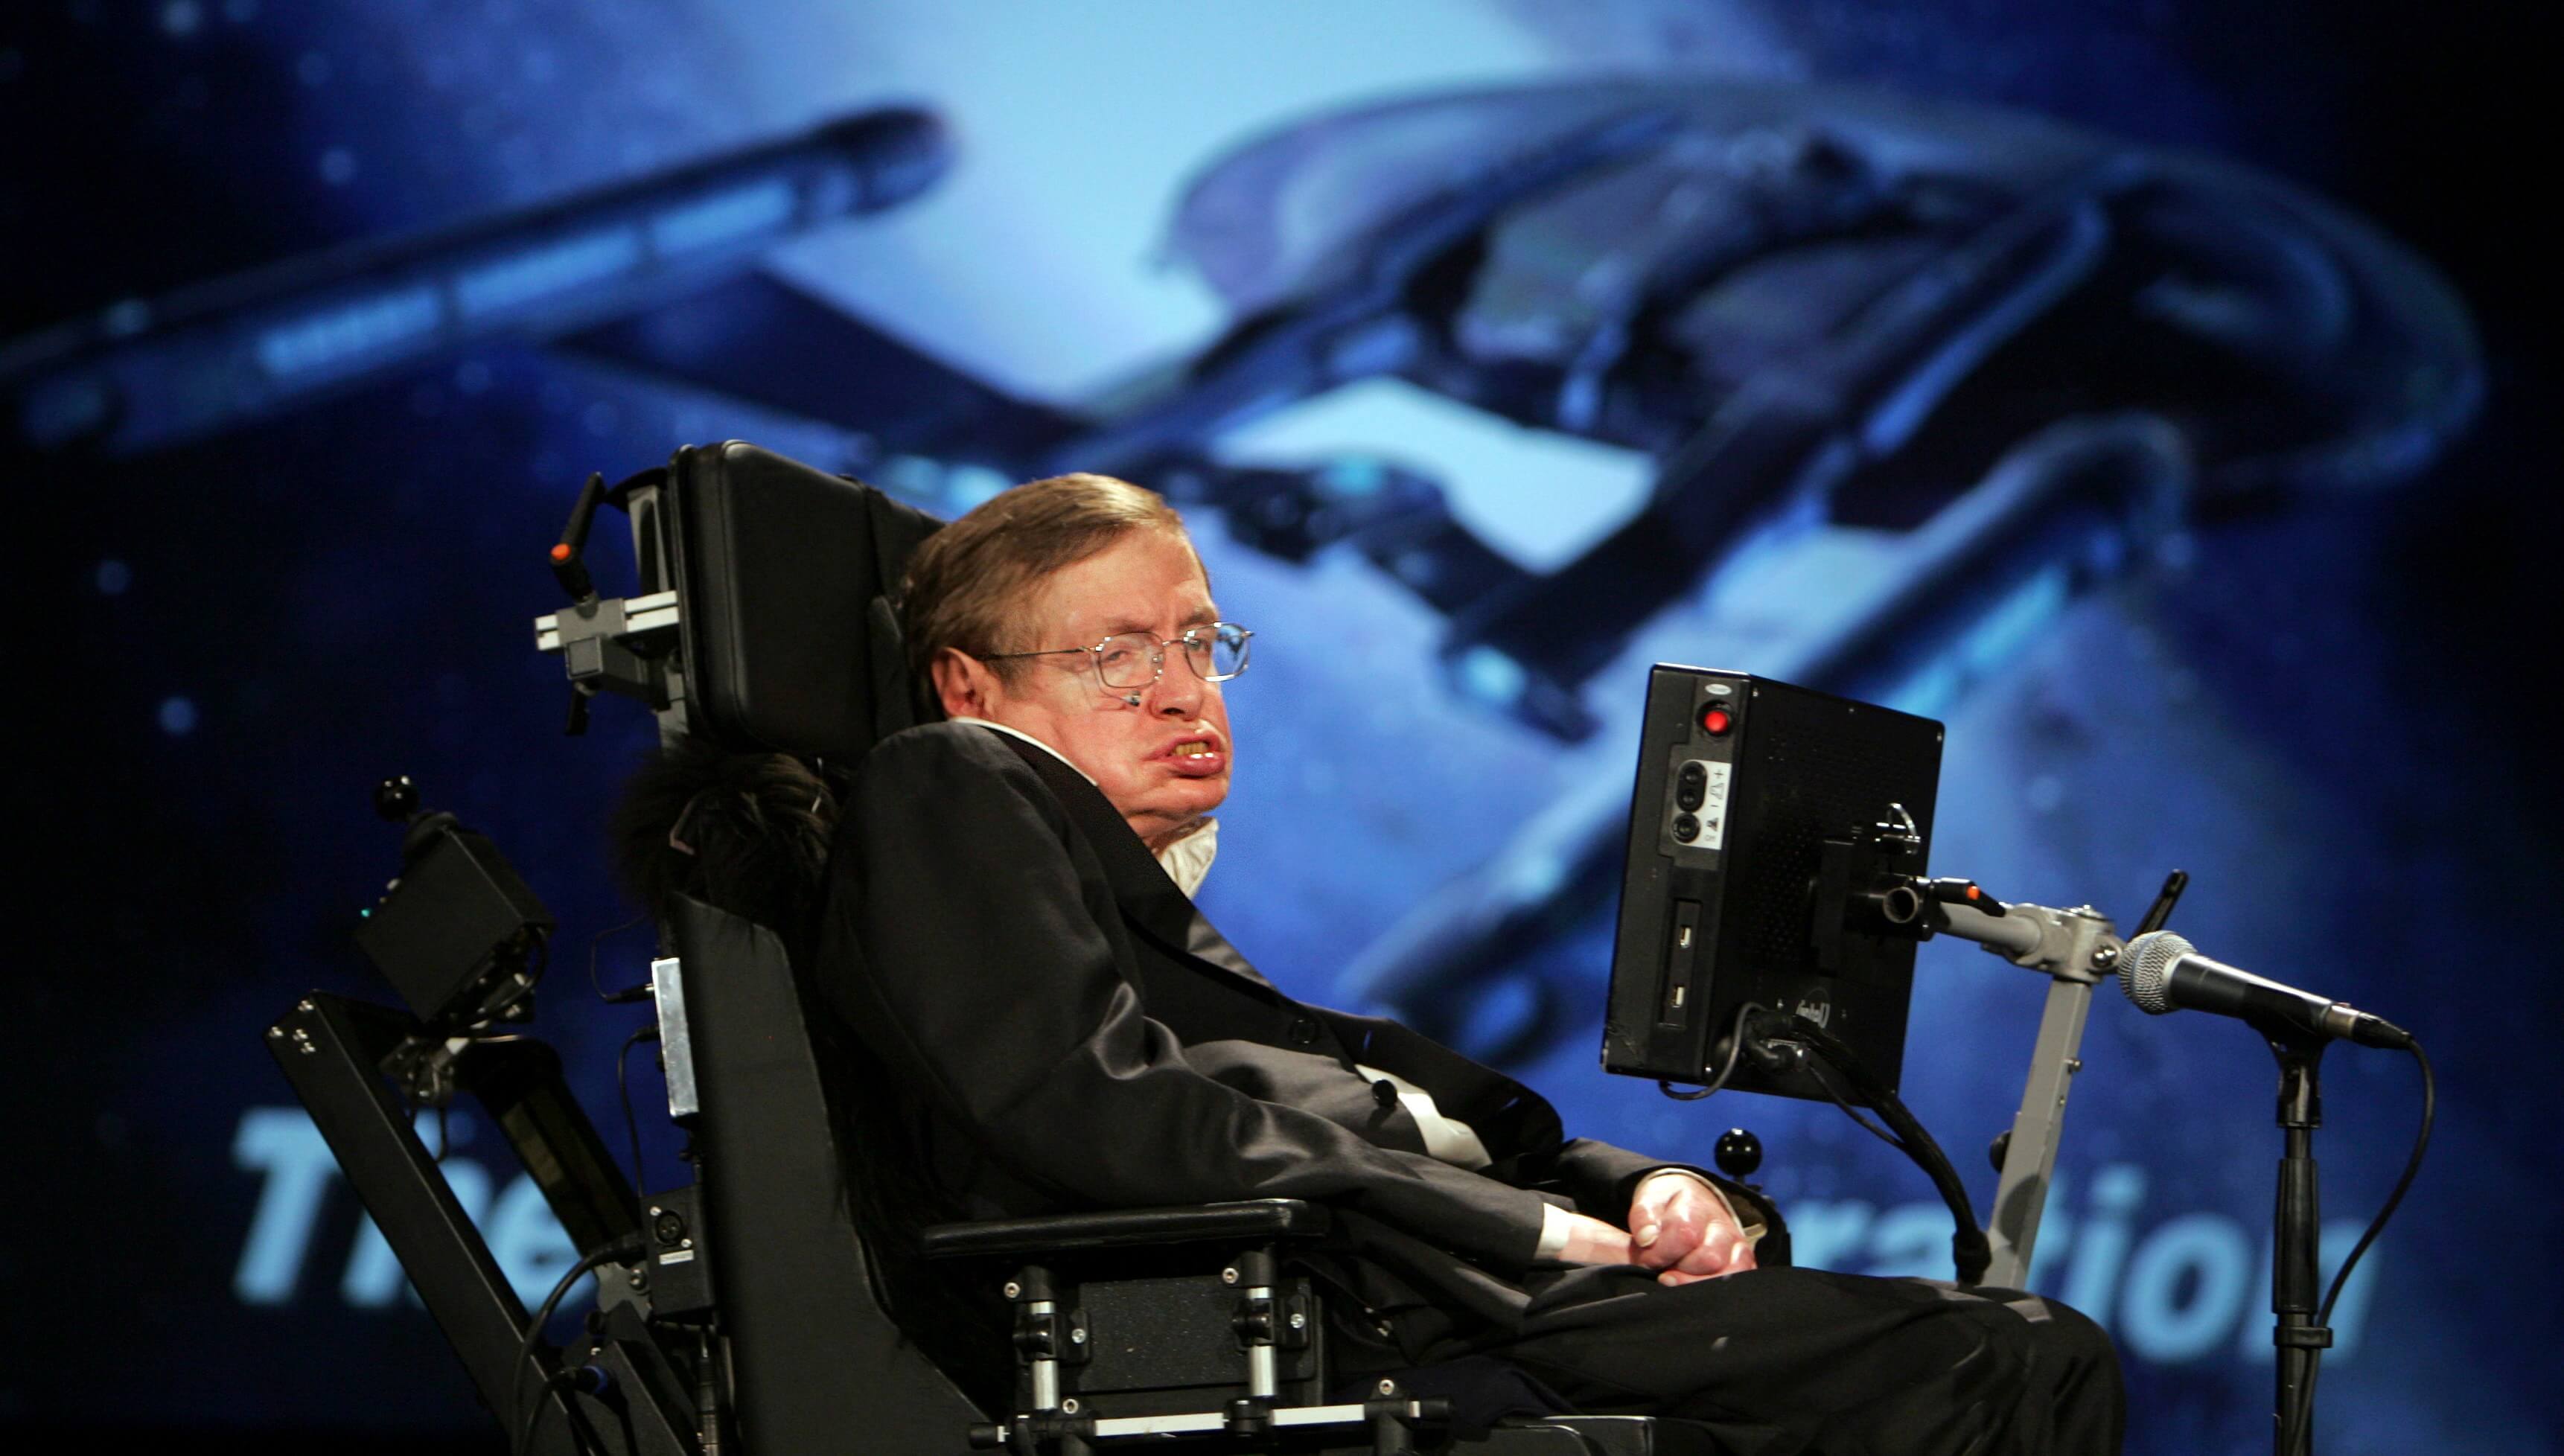 "Om vi människor vill överleva måste vi flytta till andra planeter", säger Hawking om satsningen.